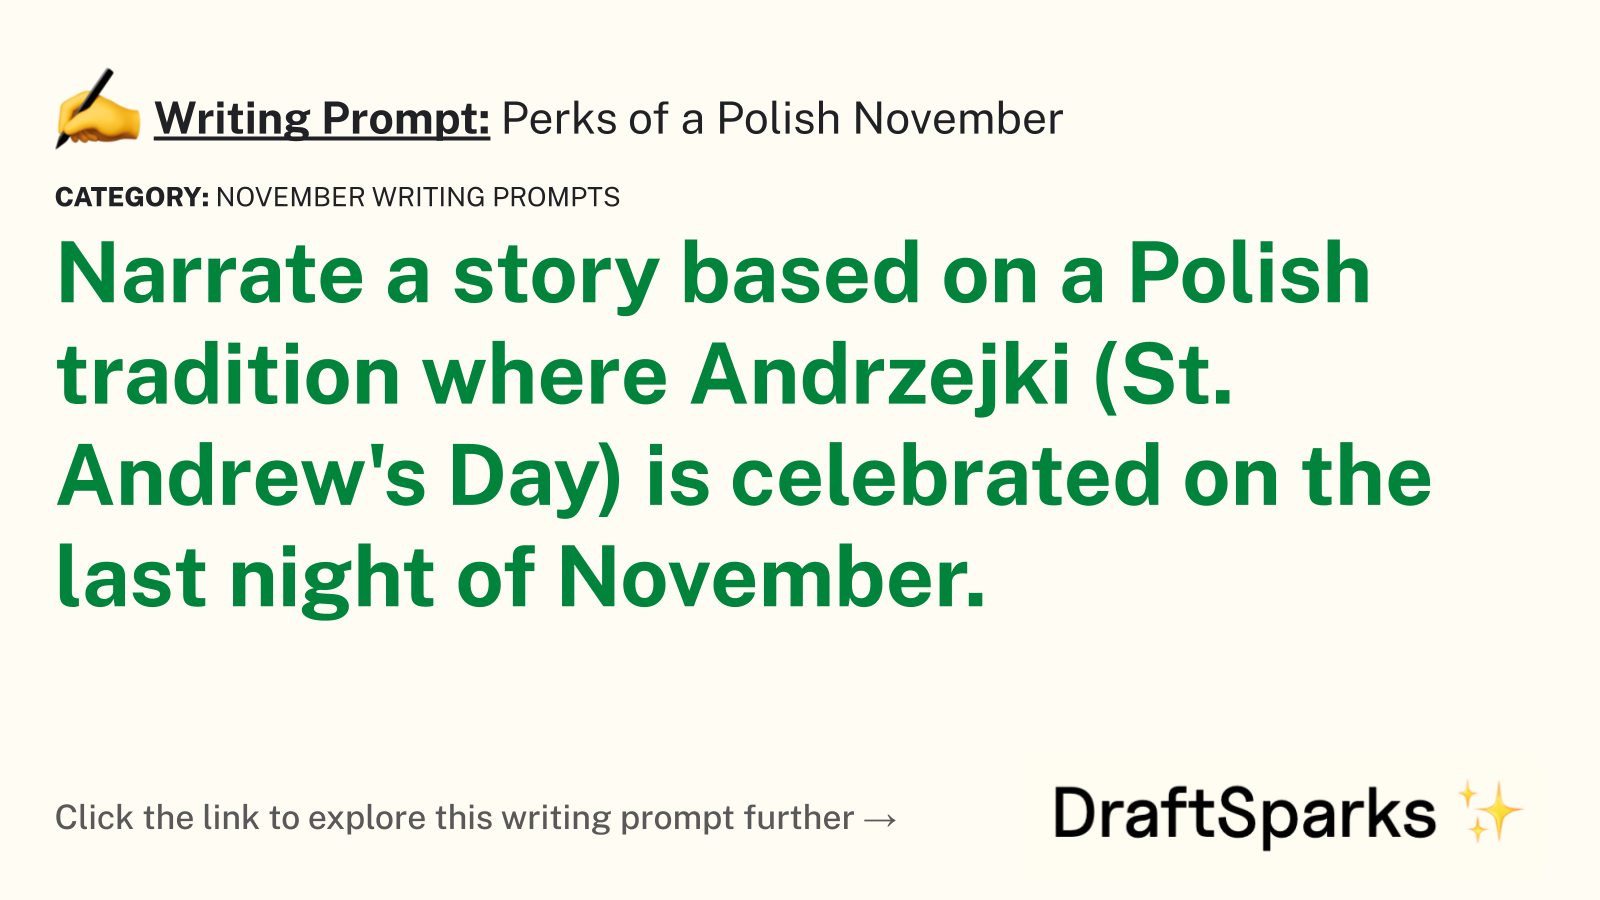 Perks of a Polish November